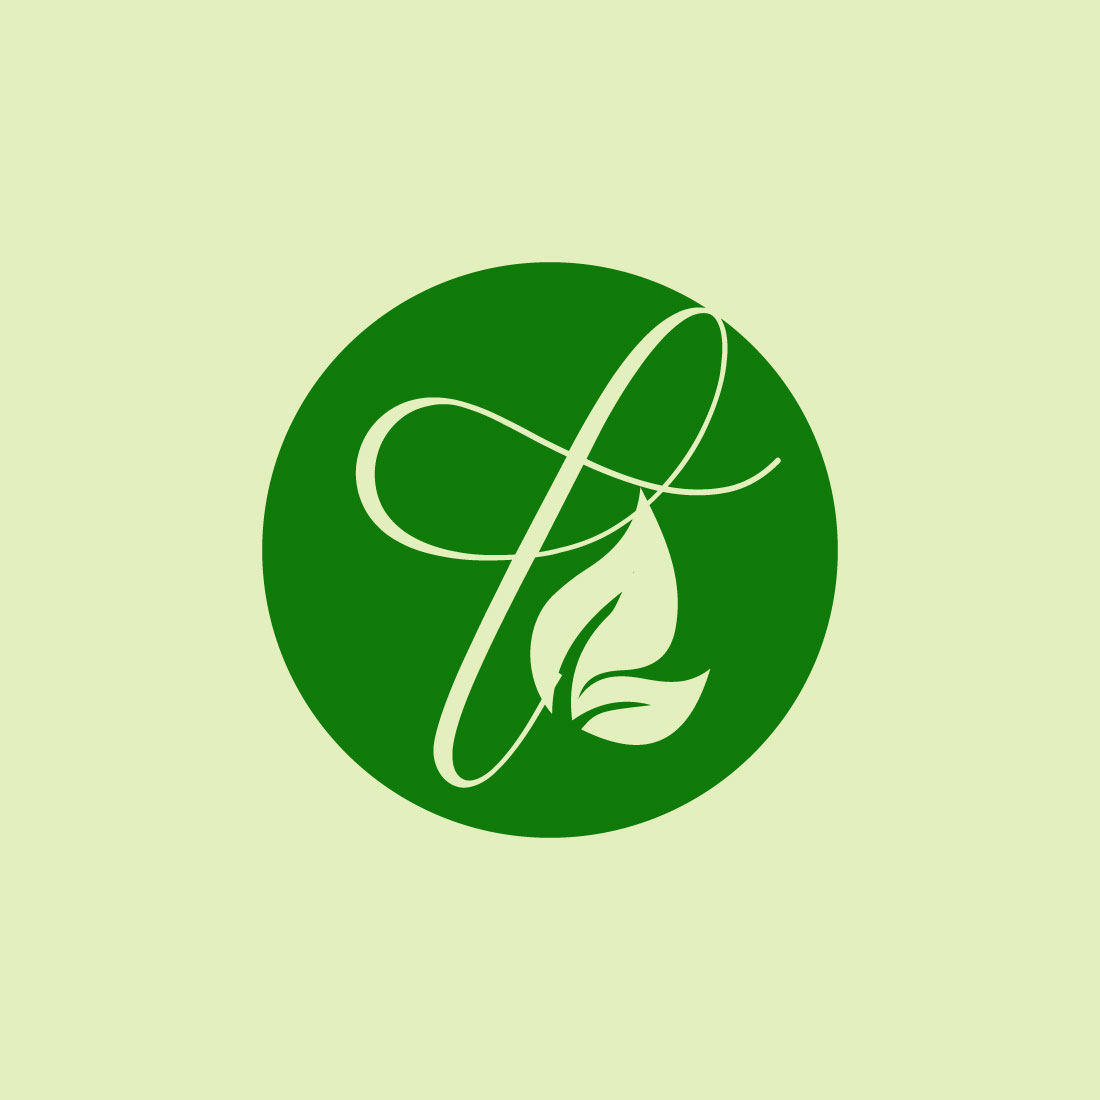 Free botanical logo cover image.